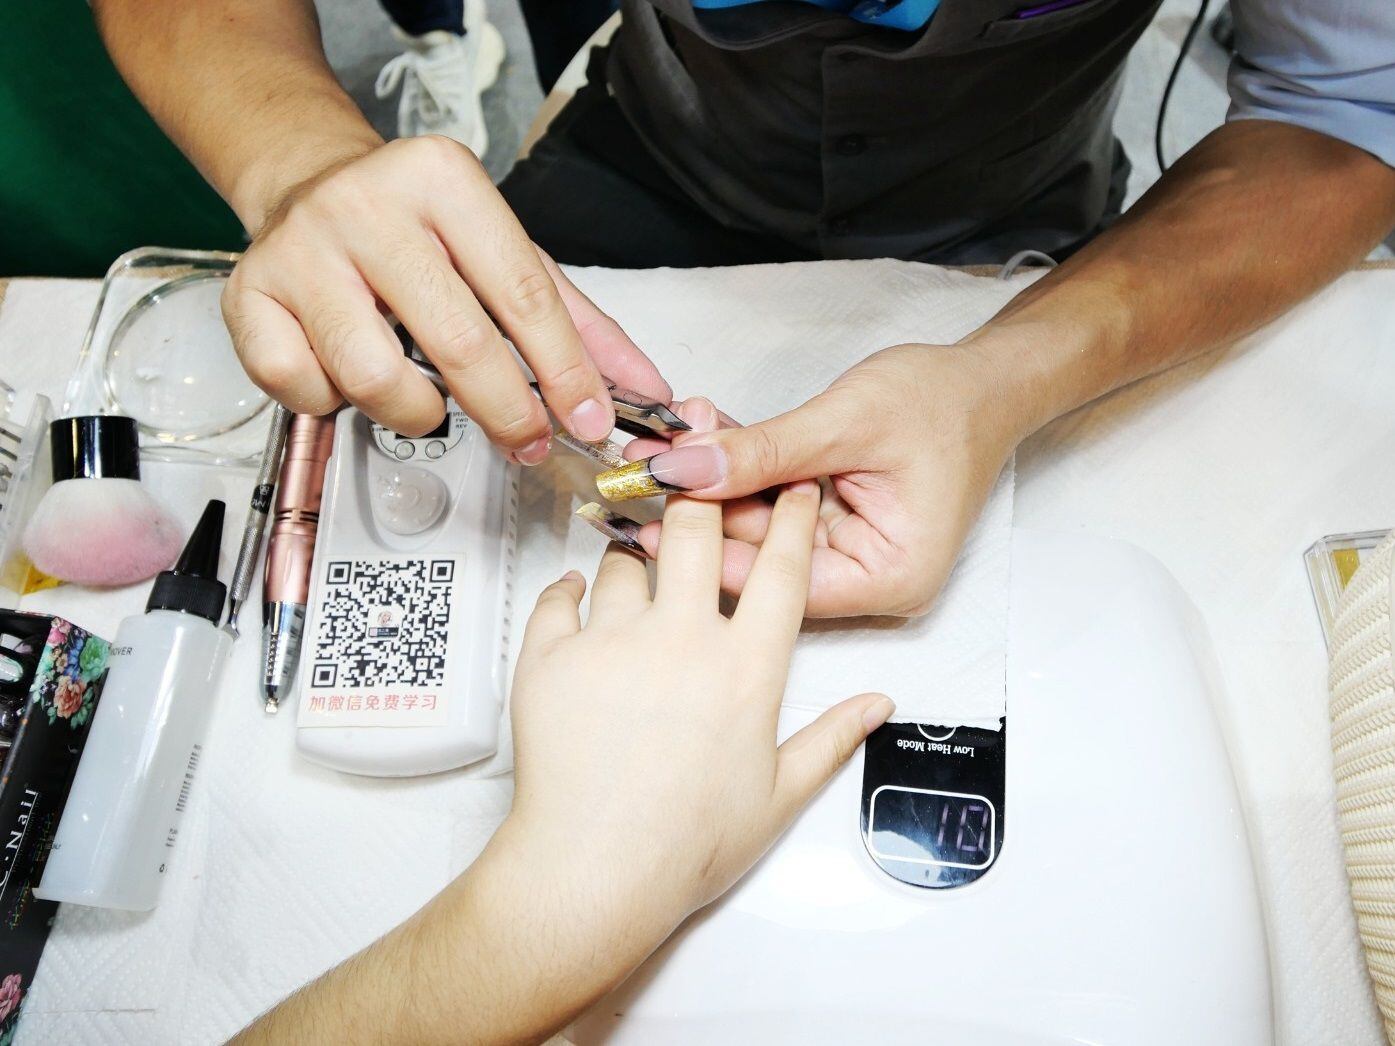 En caso de decidir sí hacerse un manicure, la recomendación es pedir que no remuevan la cutícula (EP)